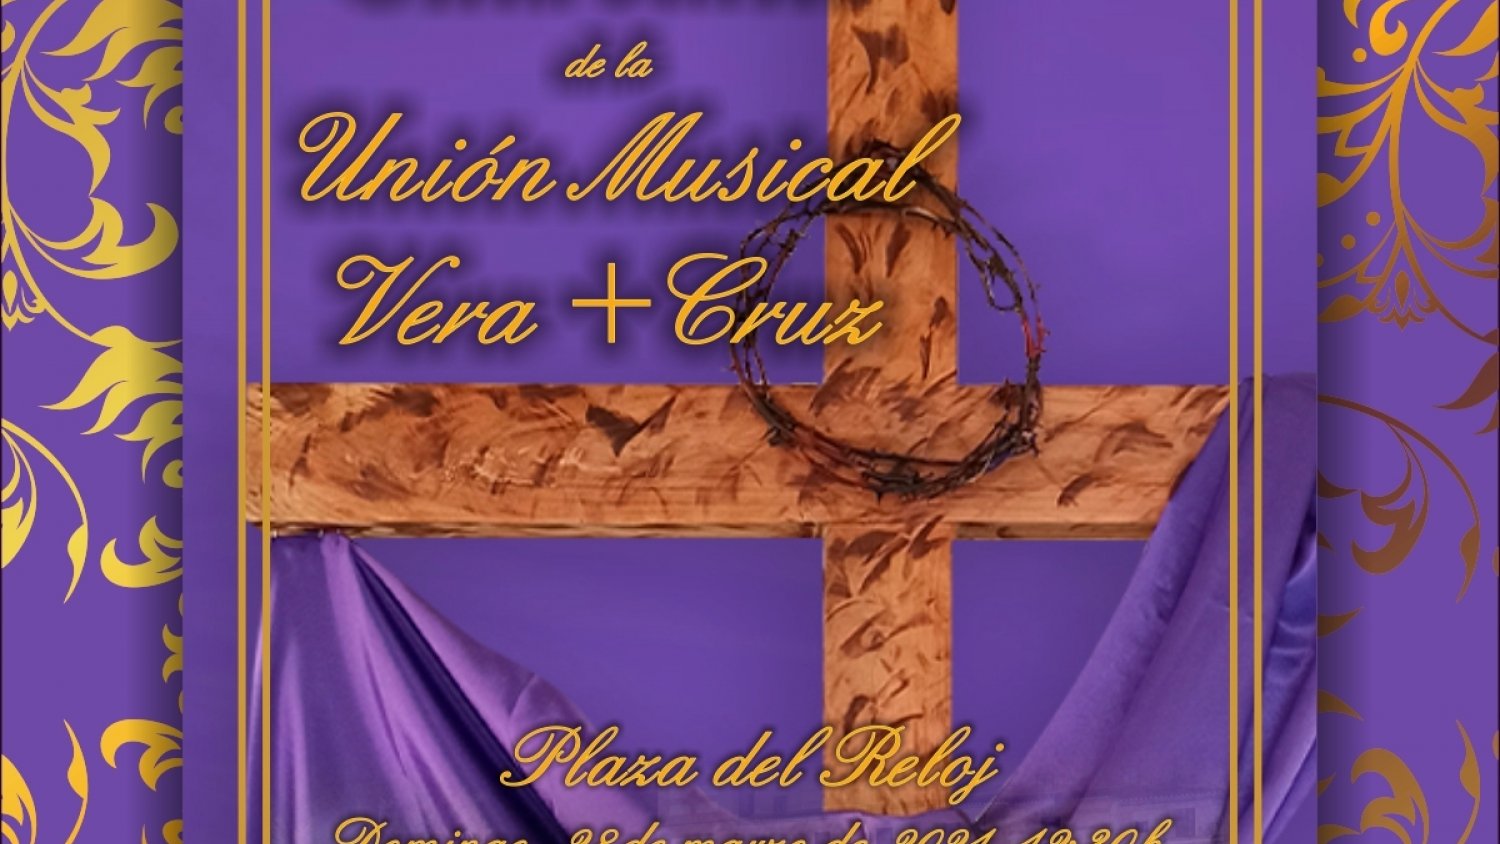 La Plaza del Reloj de Estepona recoge el Concierto de Cuaresma de la Unión Musical Vera+Cruz